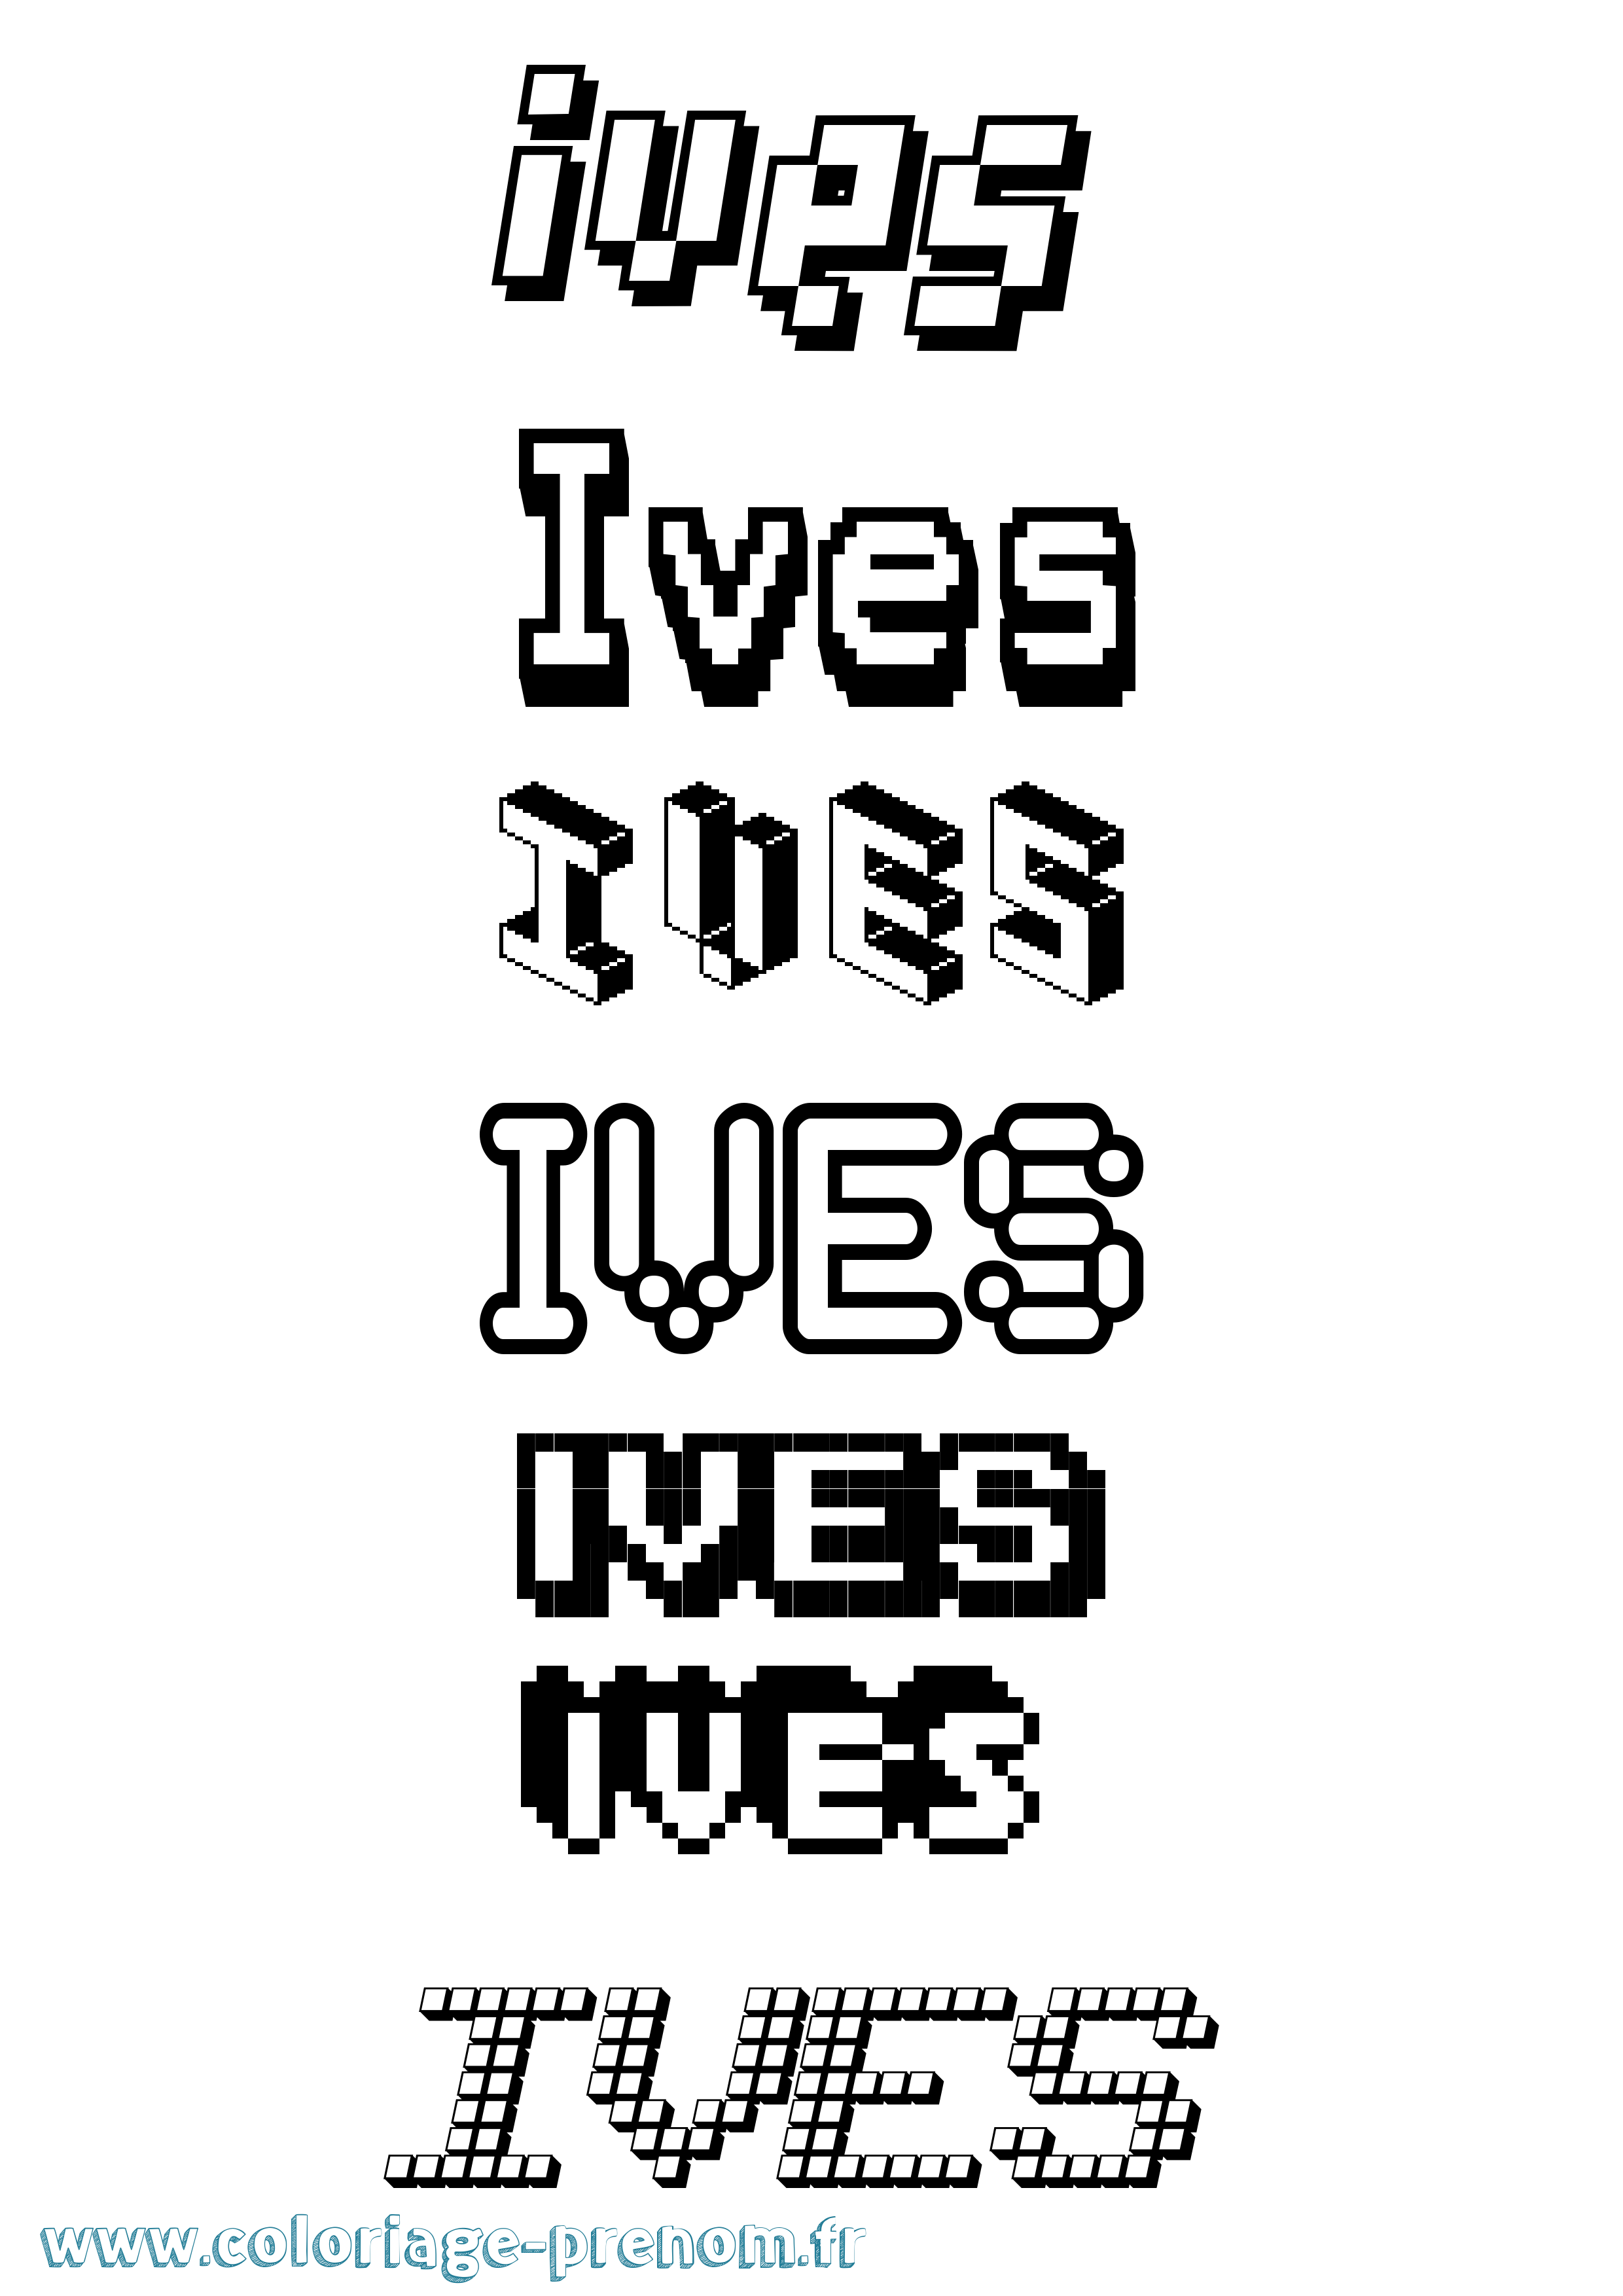 Coloriage prénom Ives Pixel